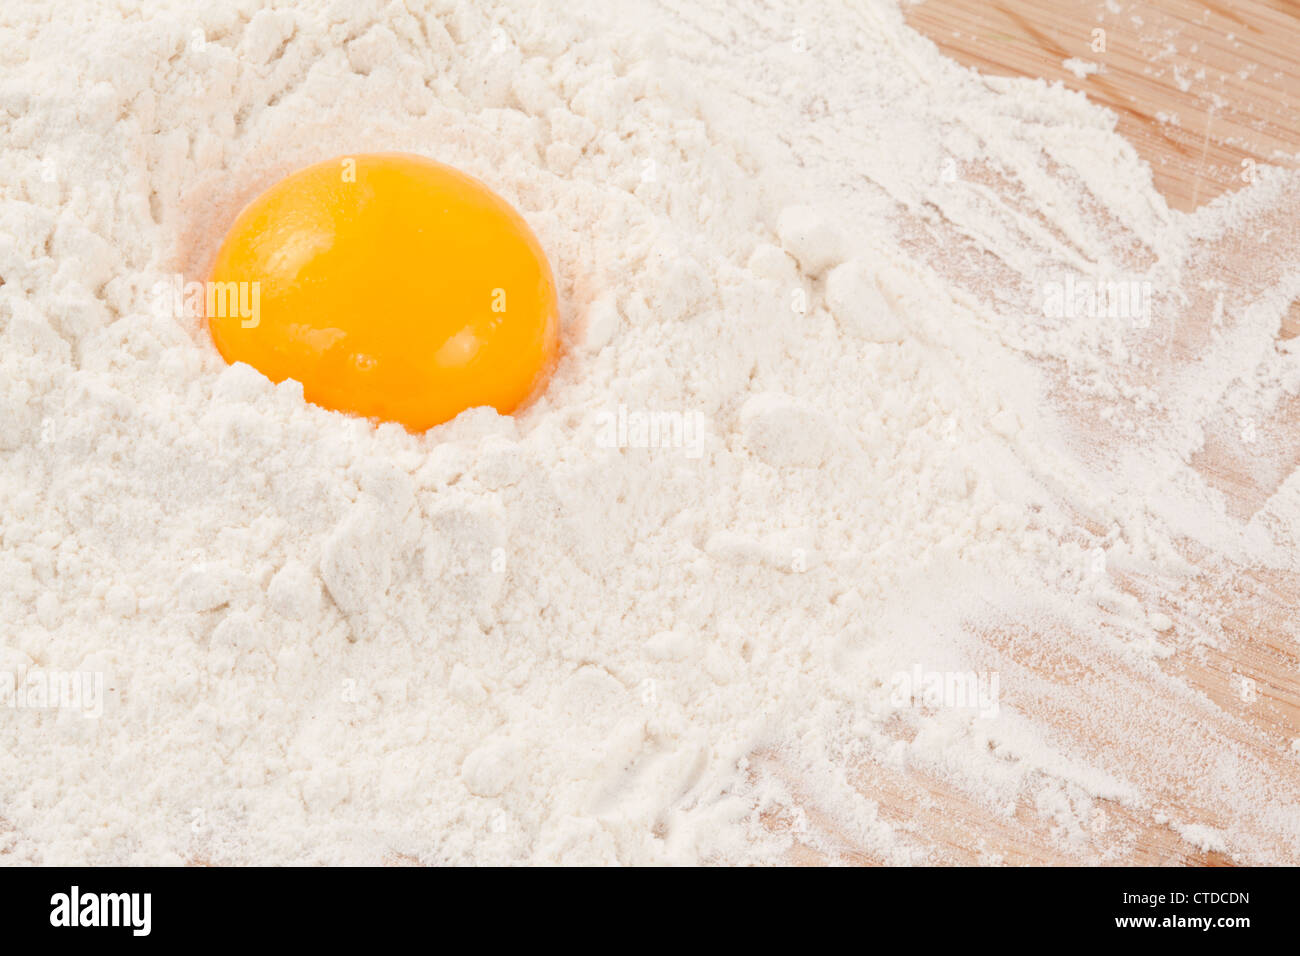 Tuorlo di uovo sulla farina Foto Stock